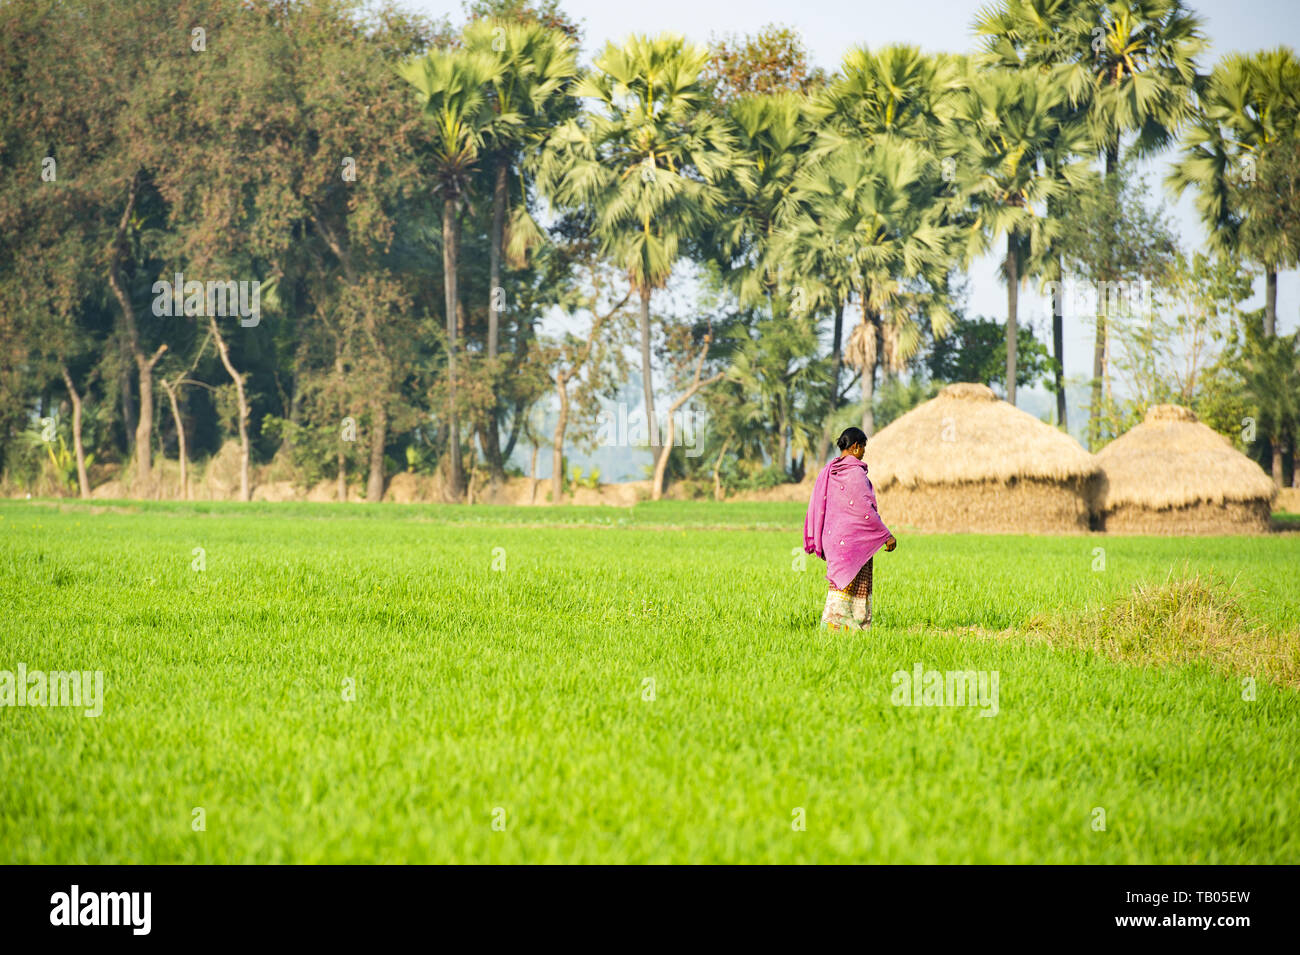 Une femme vêtue de la médecine traditionnelle indienne, Sari est marcher dans un beau champ de riz vert, peu d'abris et de palmiers en arrière-plan. Hampi. Banque D'Images